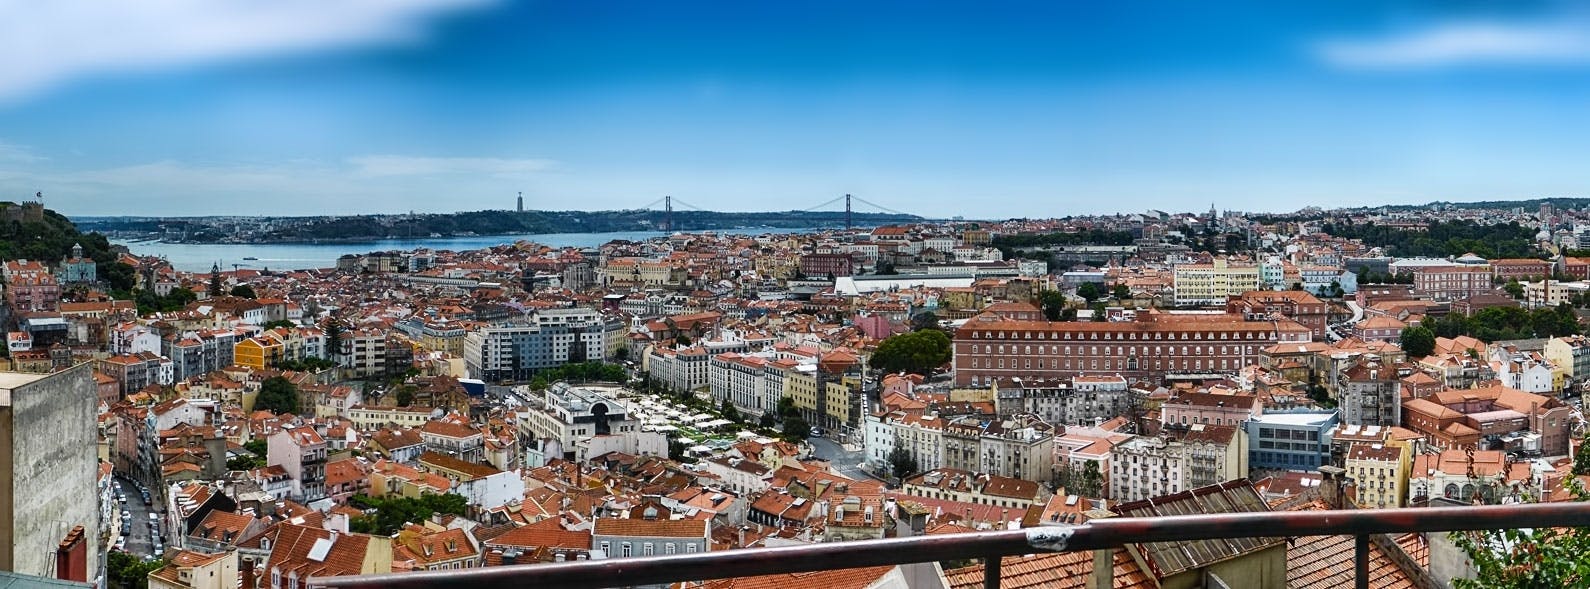 Wycieczka tuk-tukiem po Lizbonie z fado i degustacją potraw